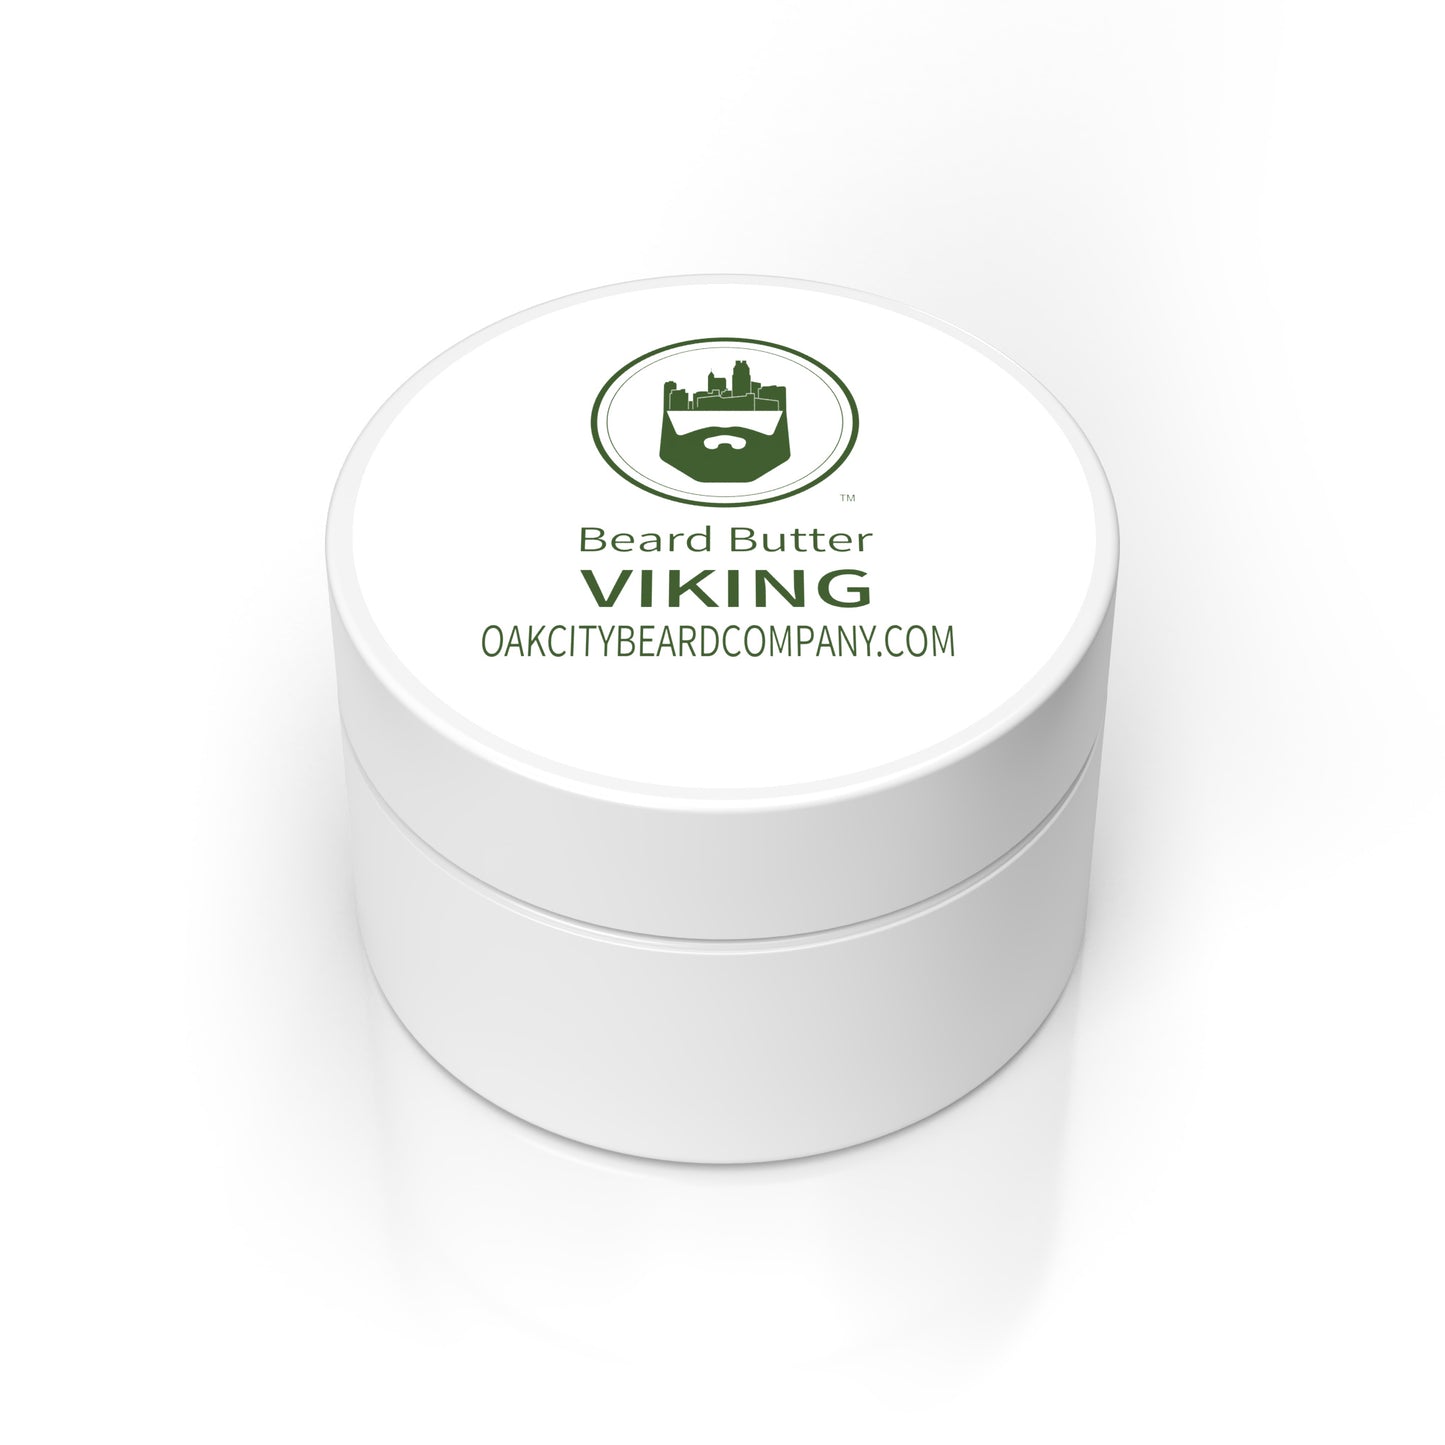 Viking (Beard Butter) by Oak City Beard Company